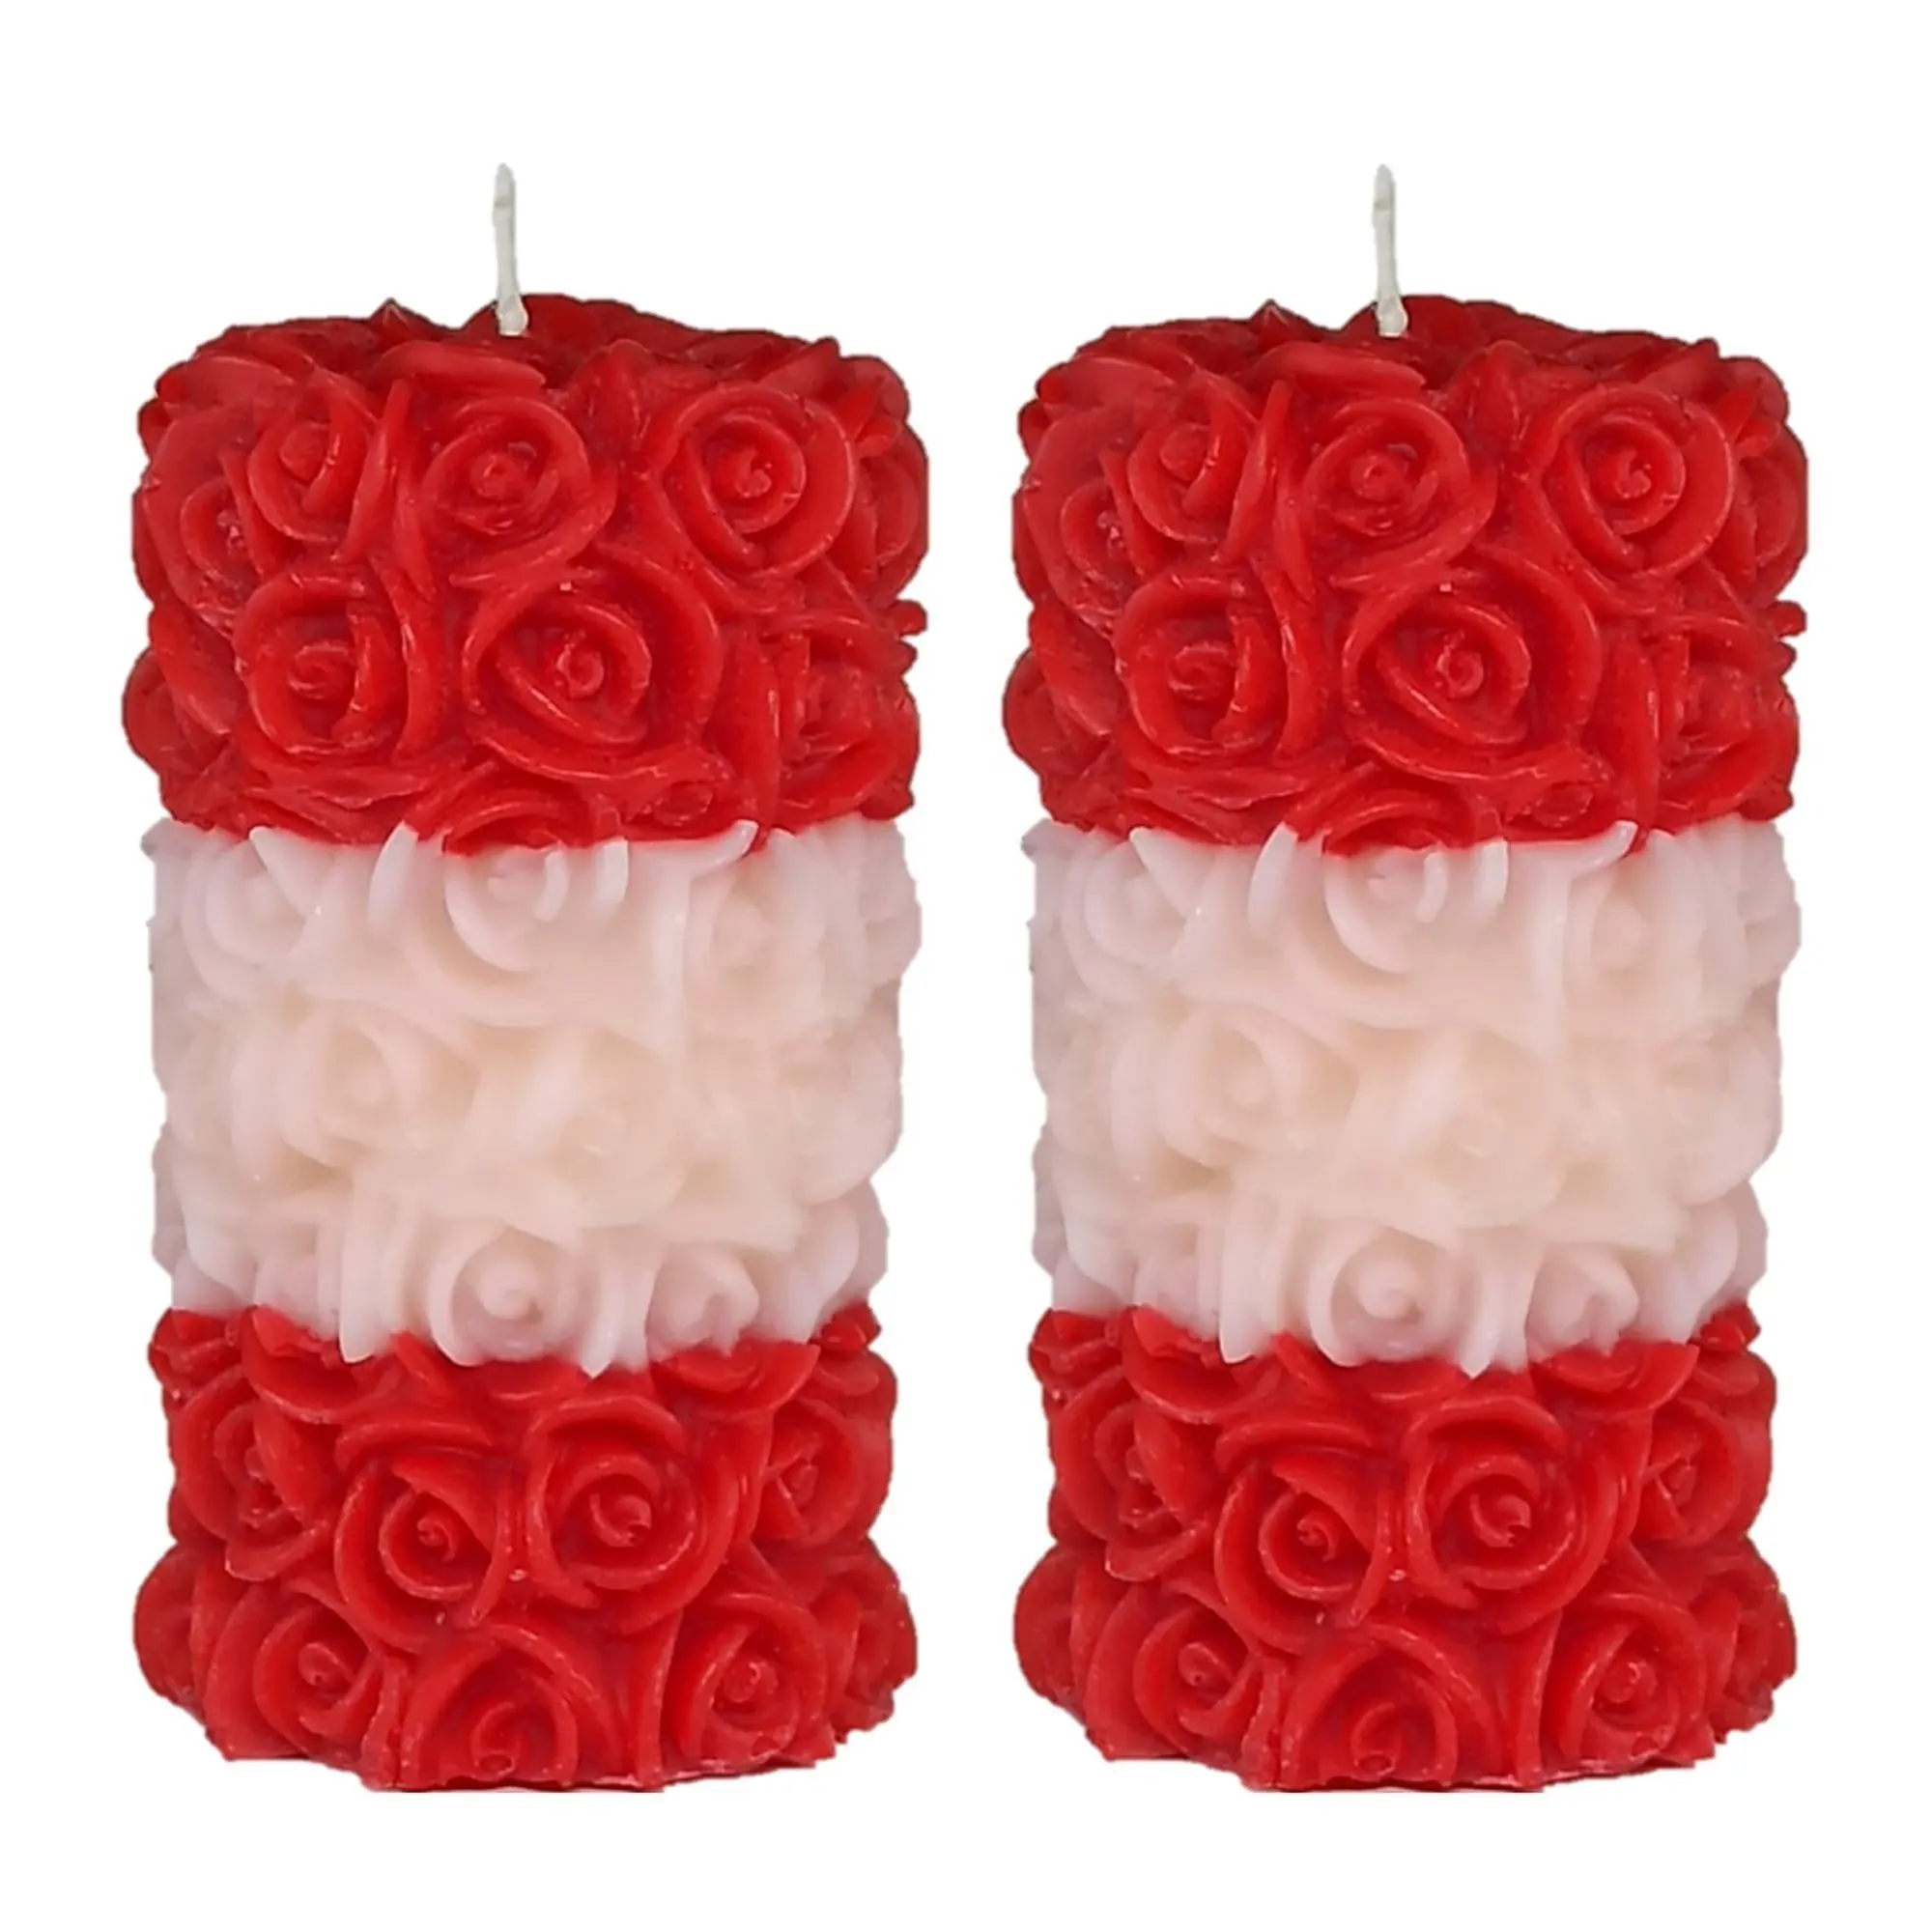 Высококачественная парафиновая восковая Роза, дизайн, многоцветная бесдымная капельная Ароматизированная Свеча для вечеринок, декоративные свечи